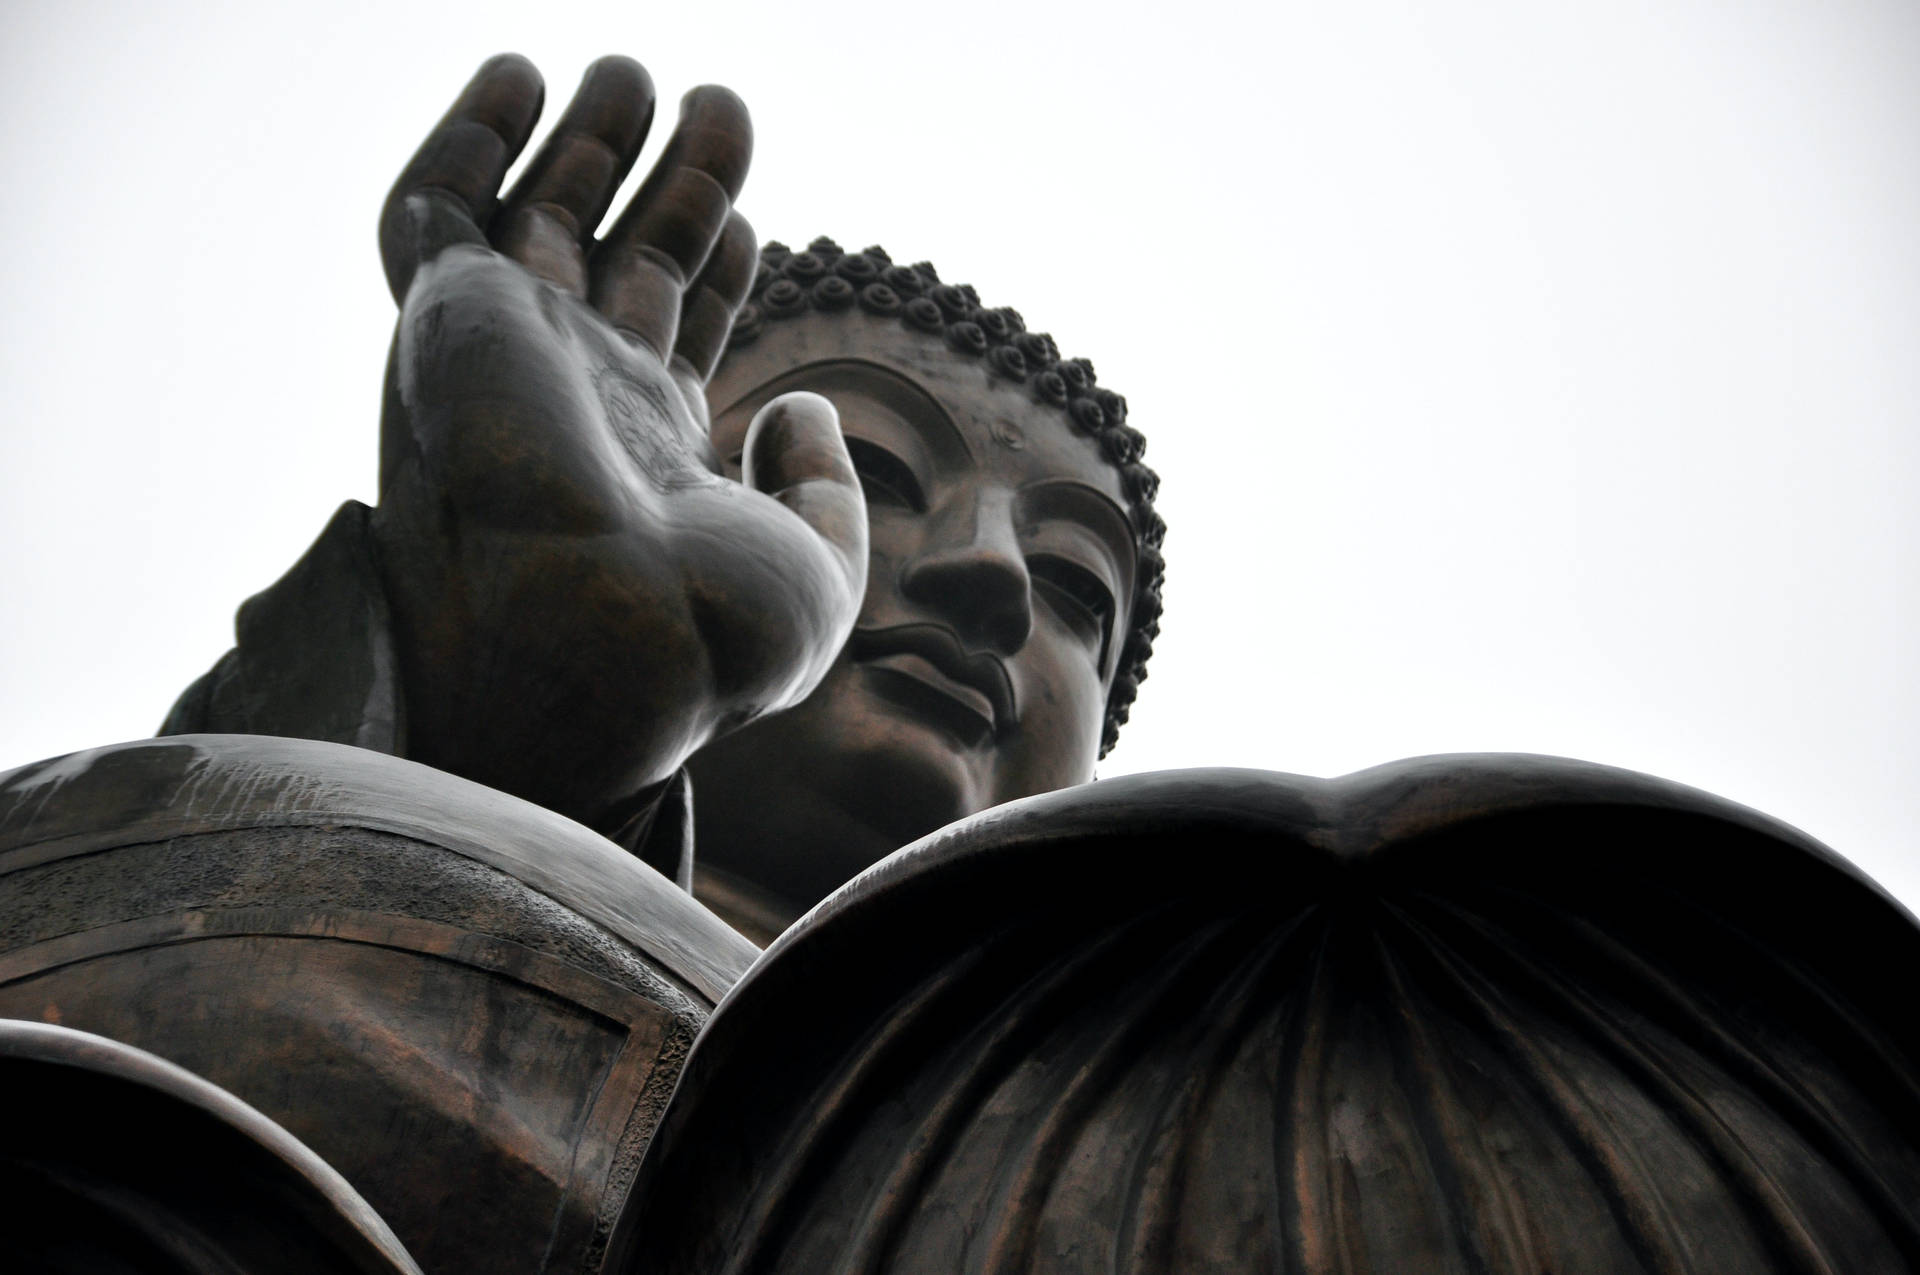 Großeschwarze Buddha-statue Wallpaper